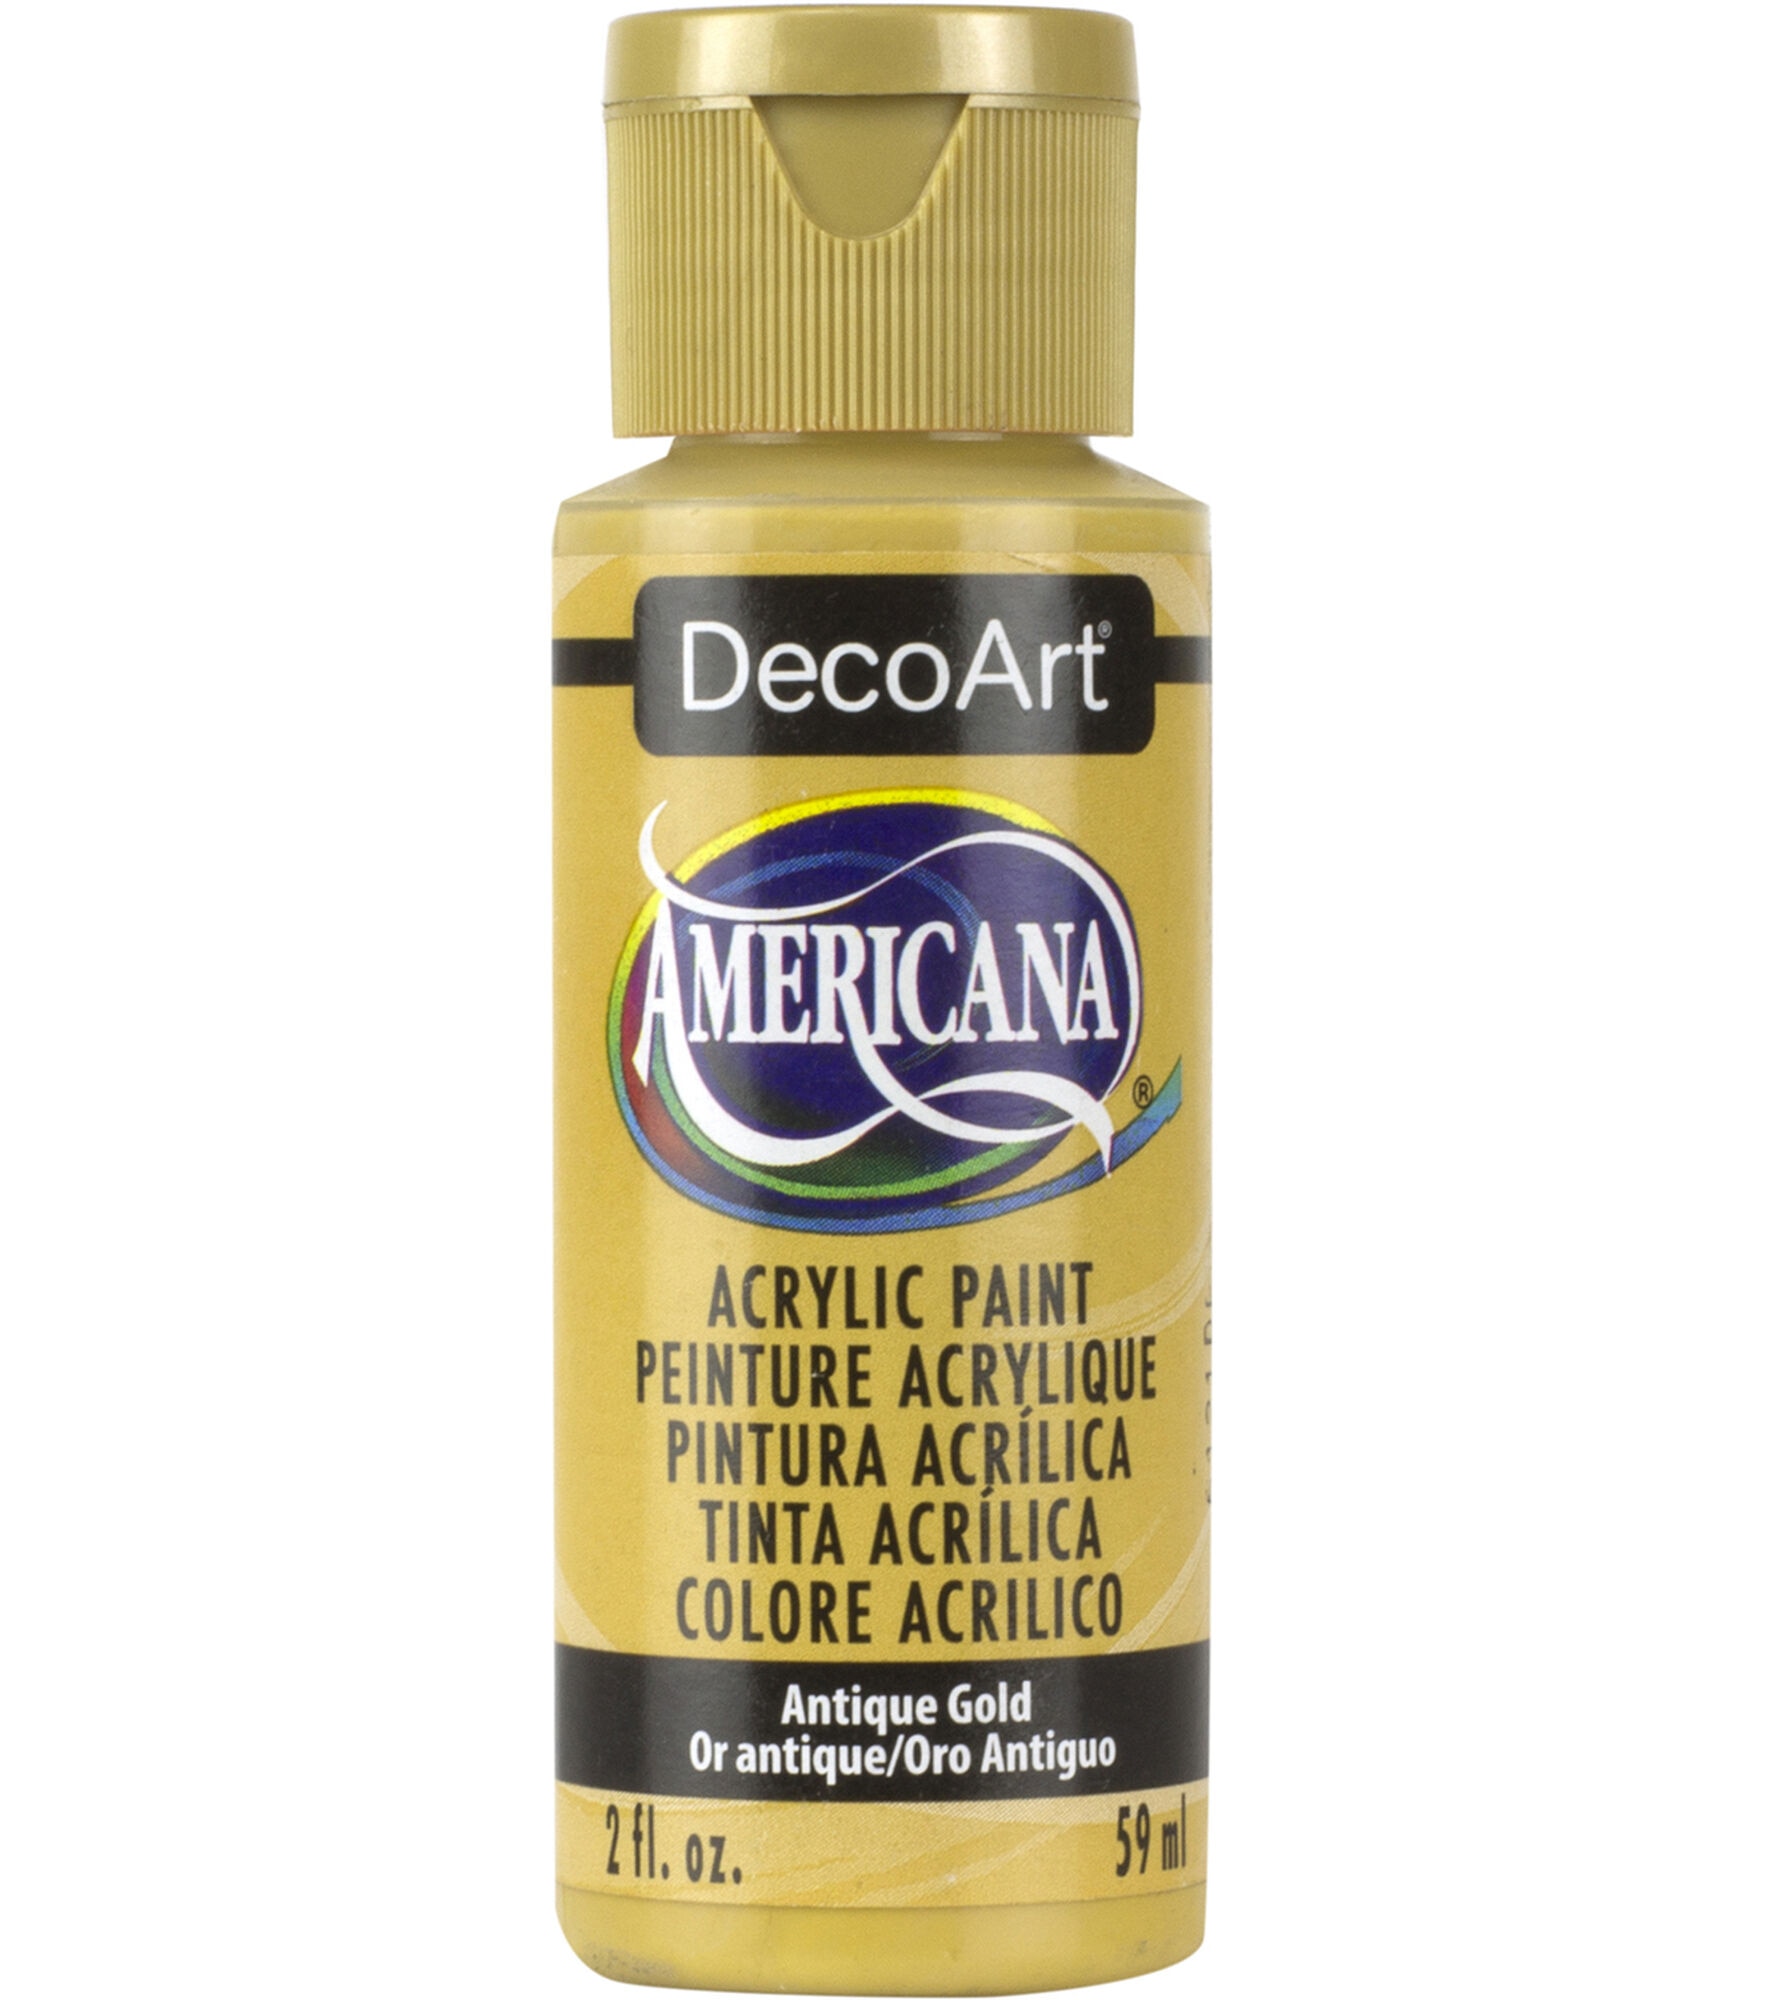 DecoArt Americana Acrylic 2oz Paint, Antique Gold, hi-res